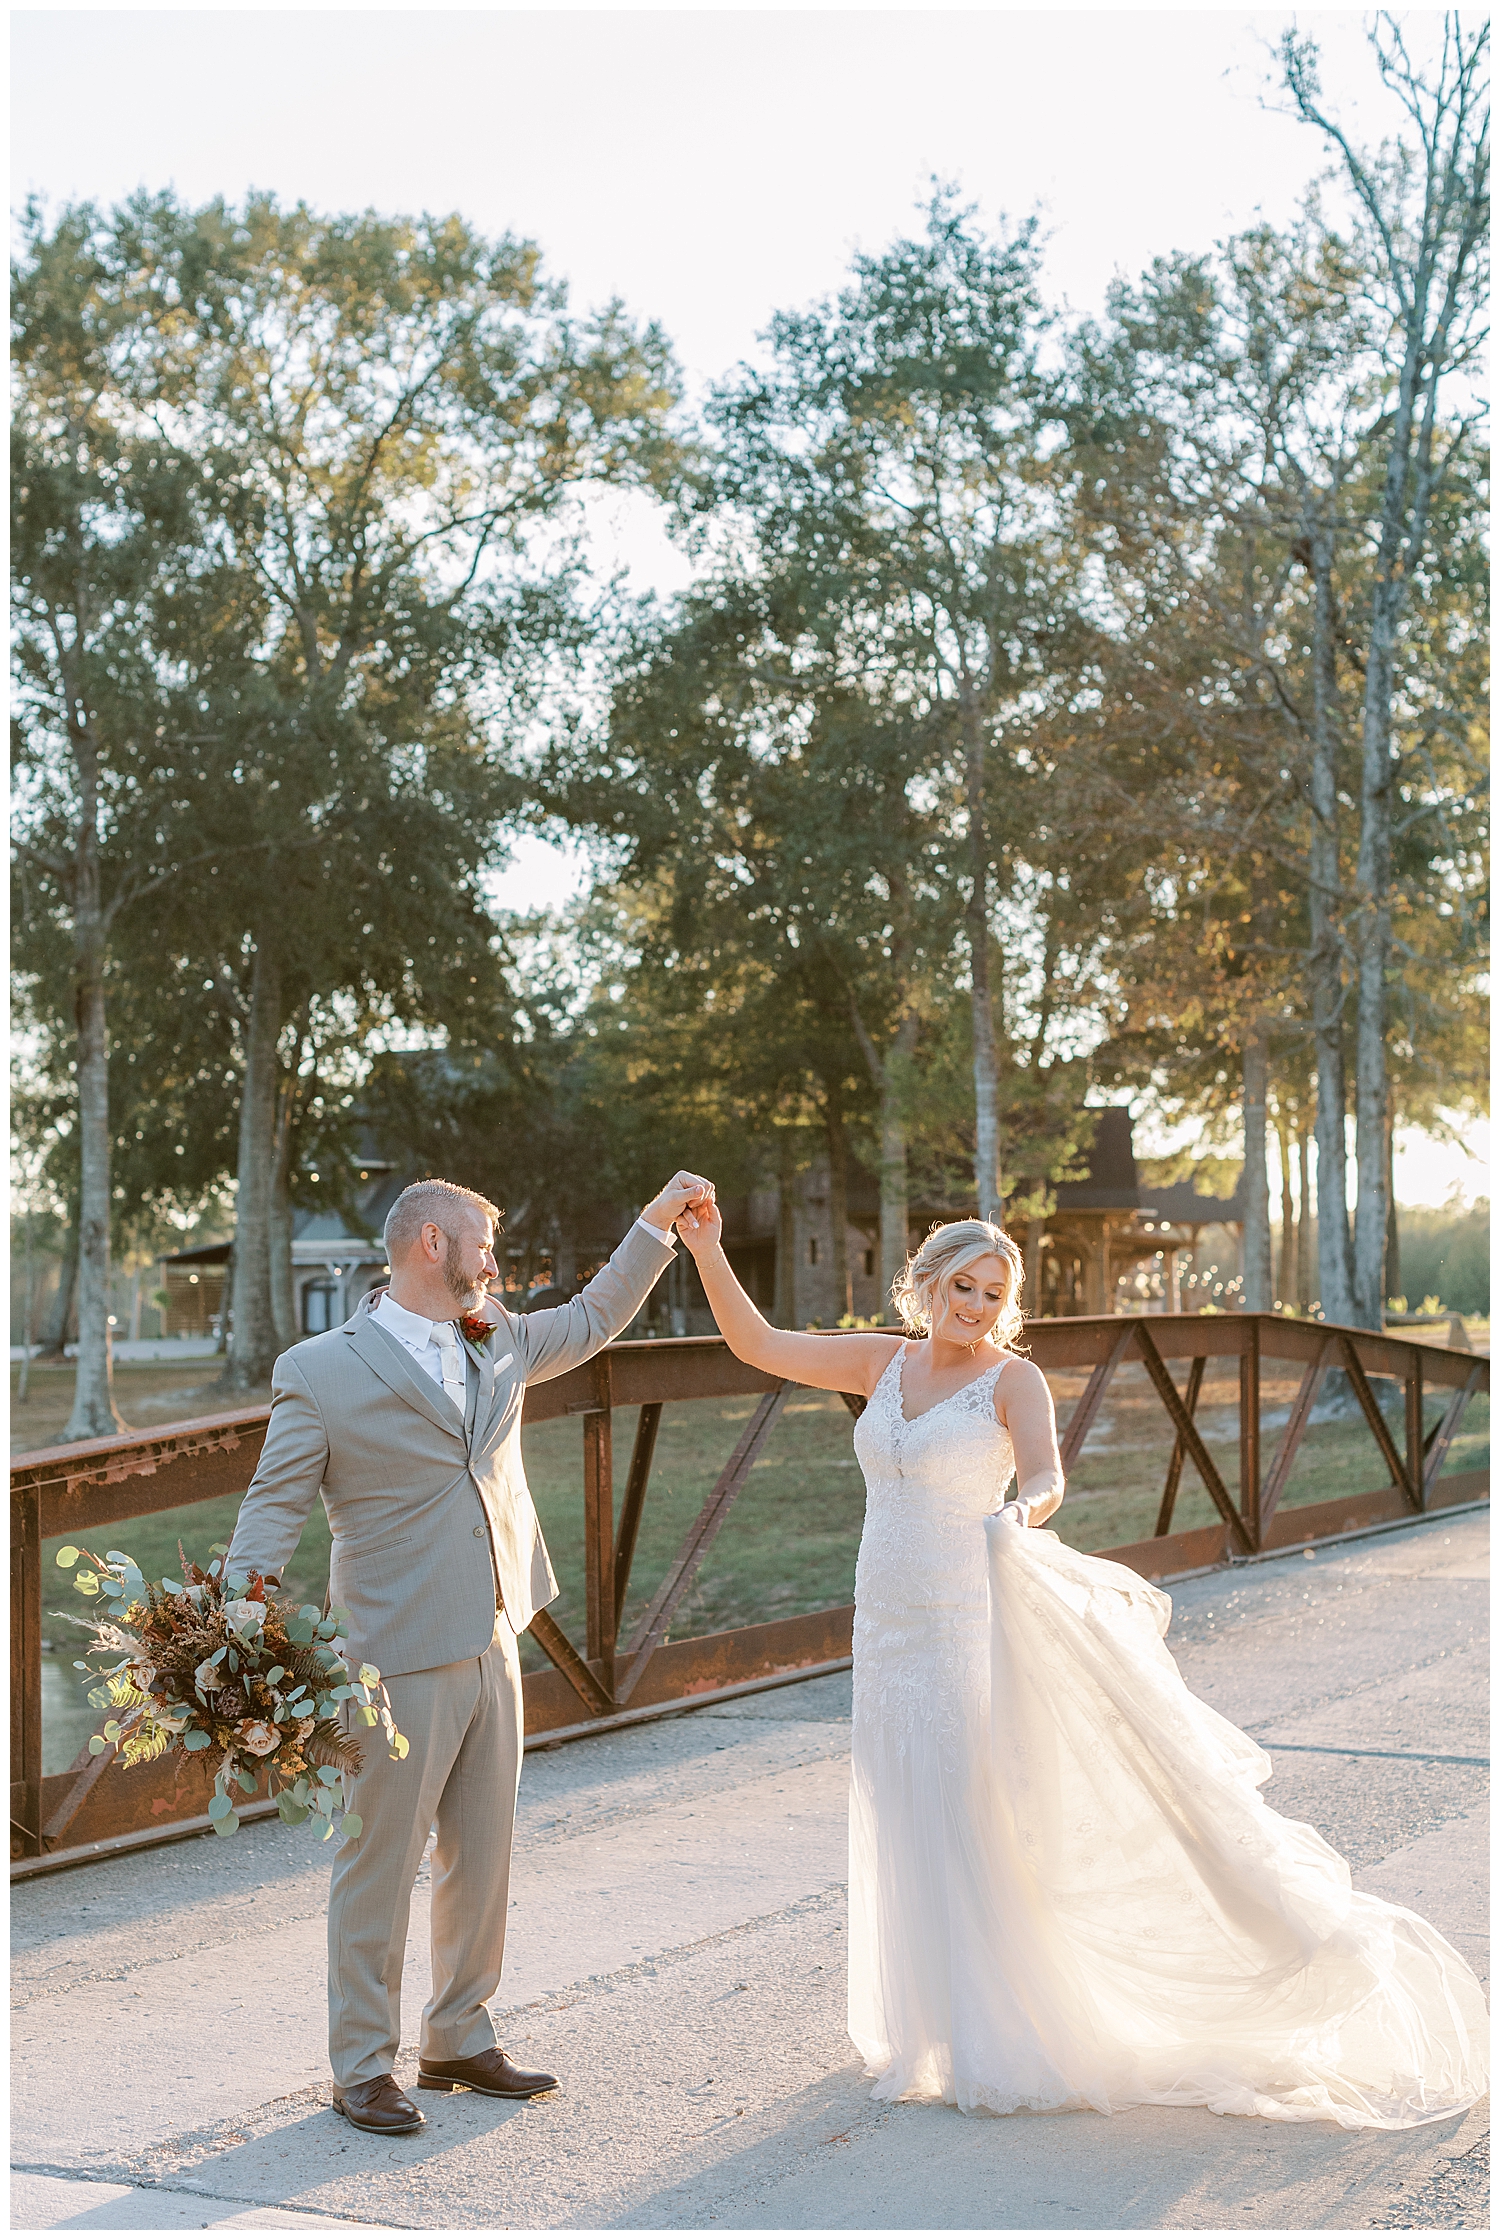 A wife twirls her wedding gown.